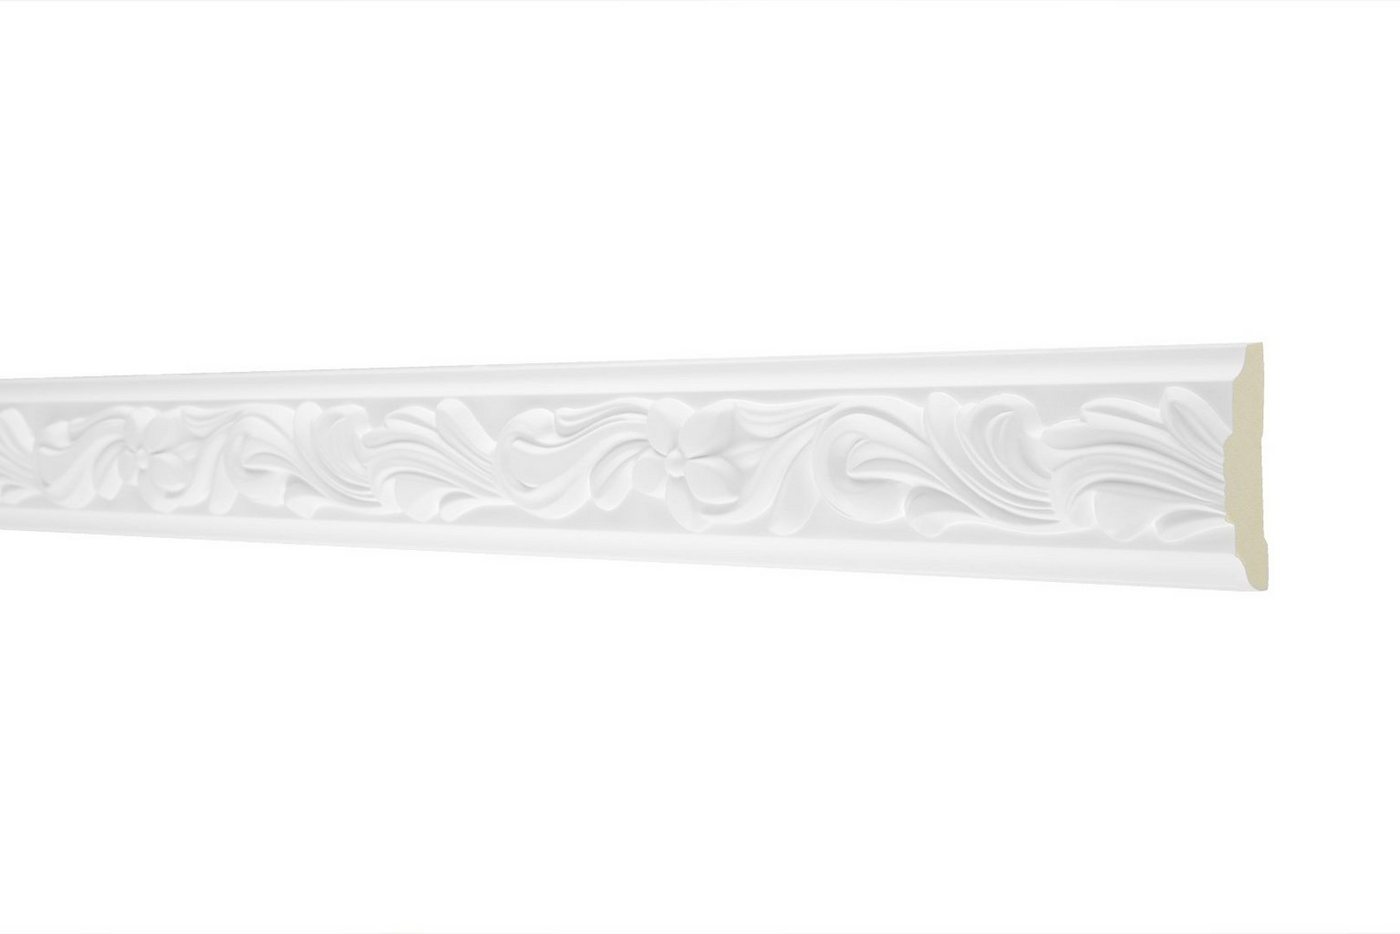 Hexim Perfect Stuckleiste AC207, Wand- und Deckenumrandung aus PU - 2 Meter Flachleiste, hart & stoßfest, weißes Zierprofil - Wandleiste vorgrundiert von Hexim Perfect